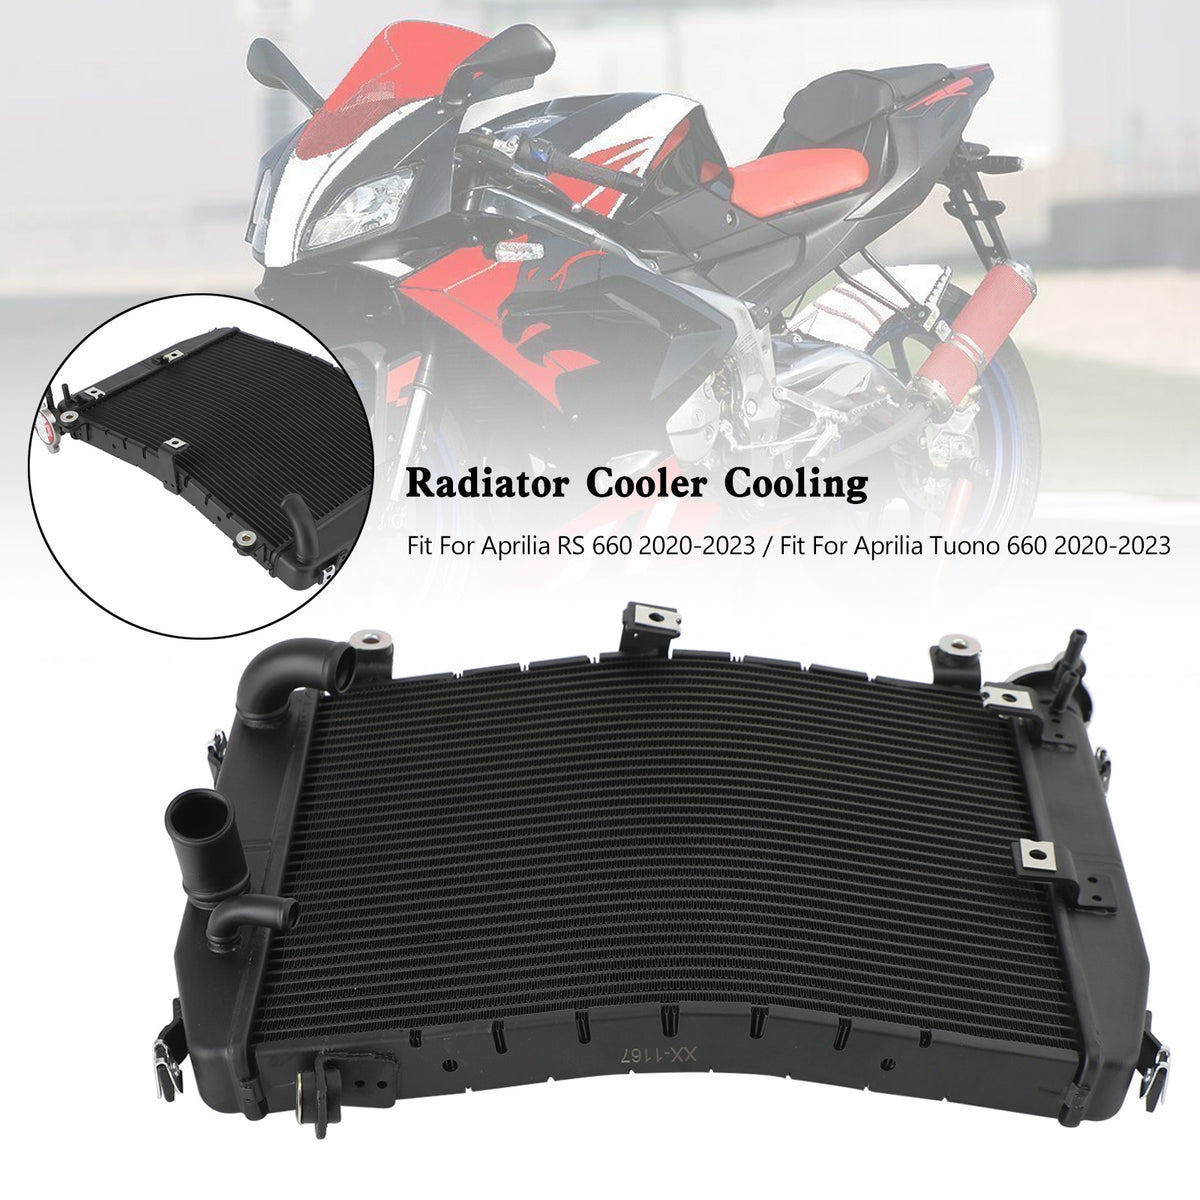 Aluminium Engine Radiator Cooler Cooling For Aprilia RS660 Tuono 660 2020-2023